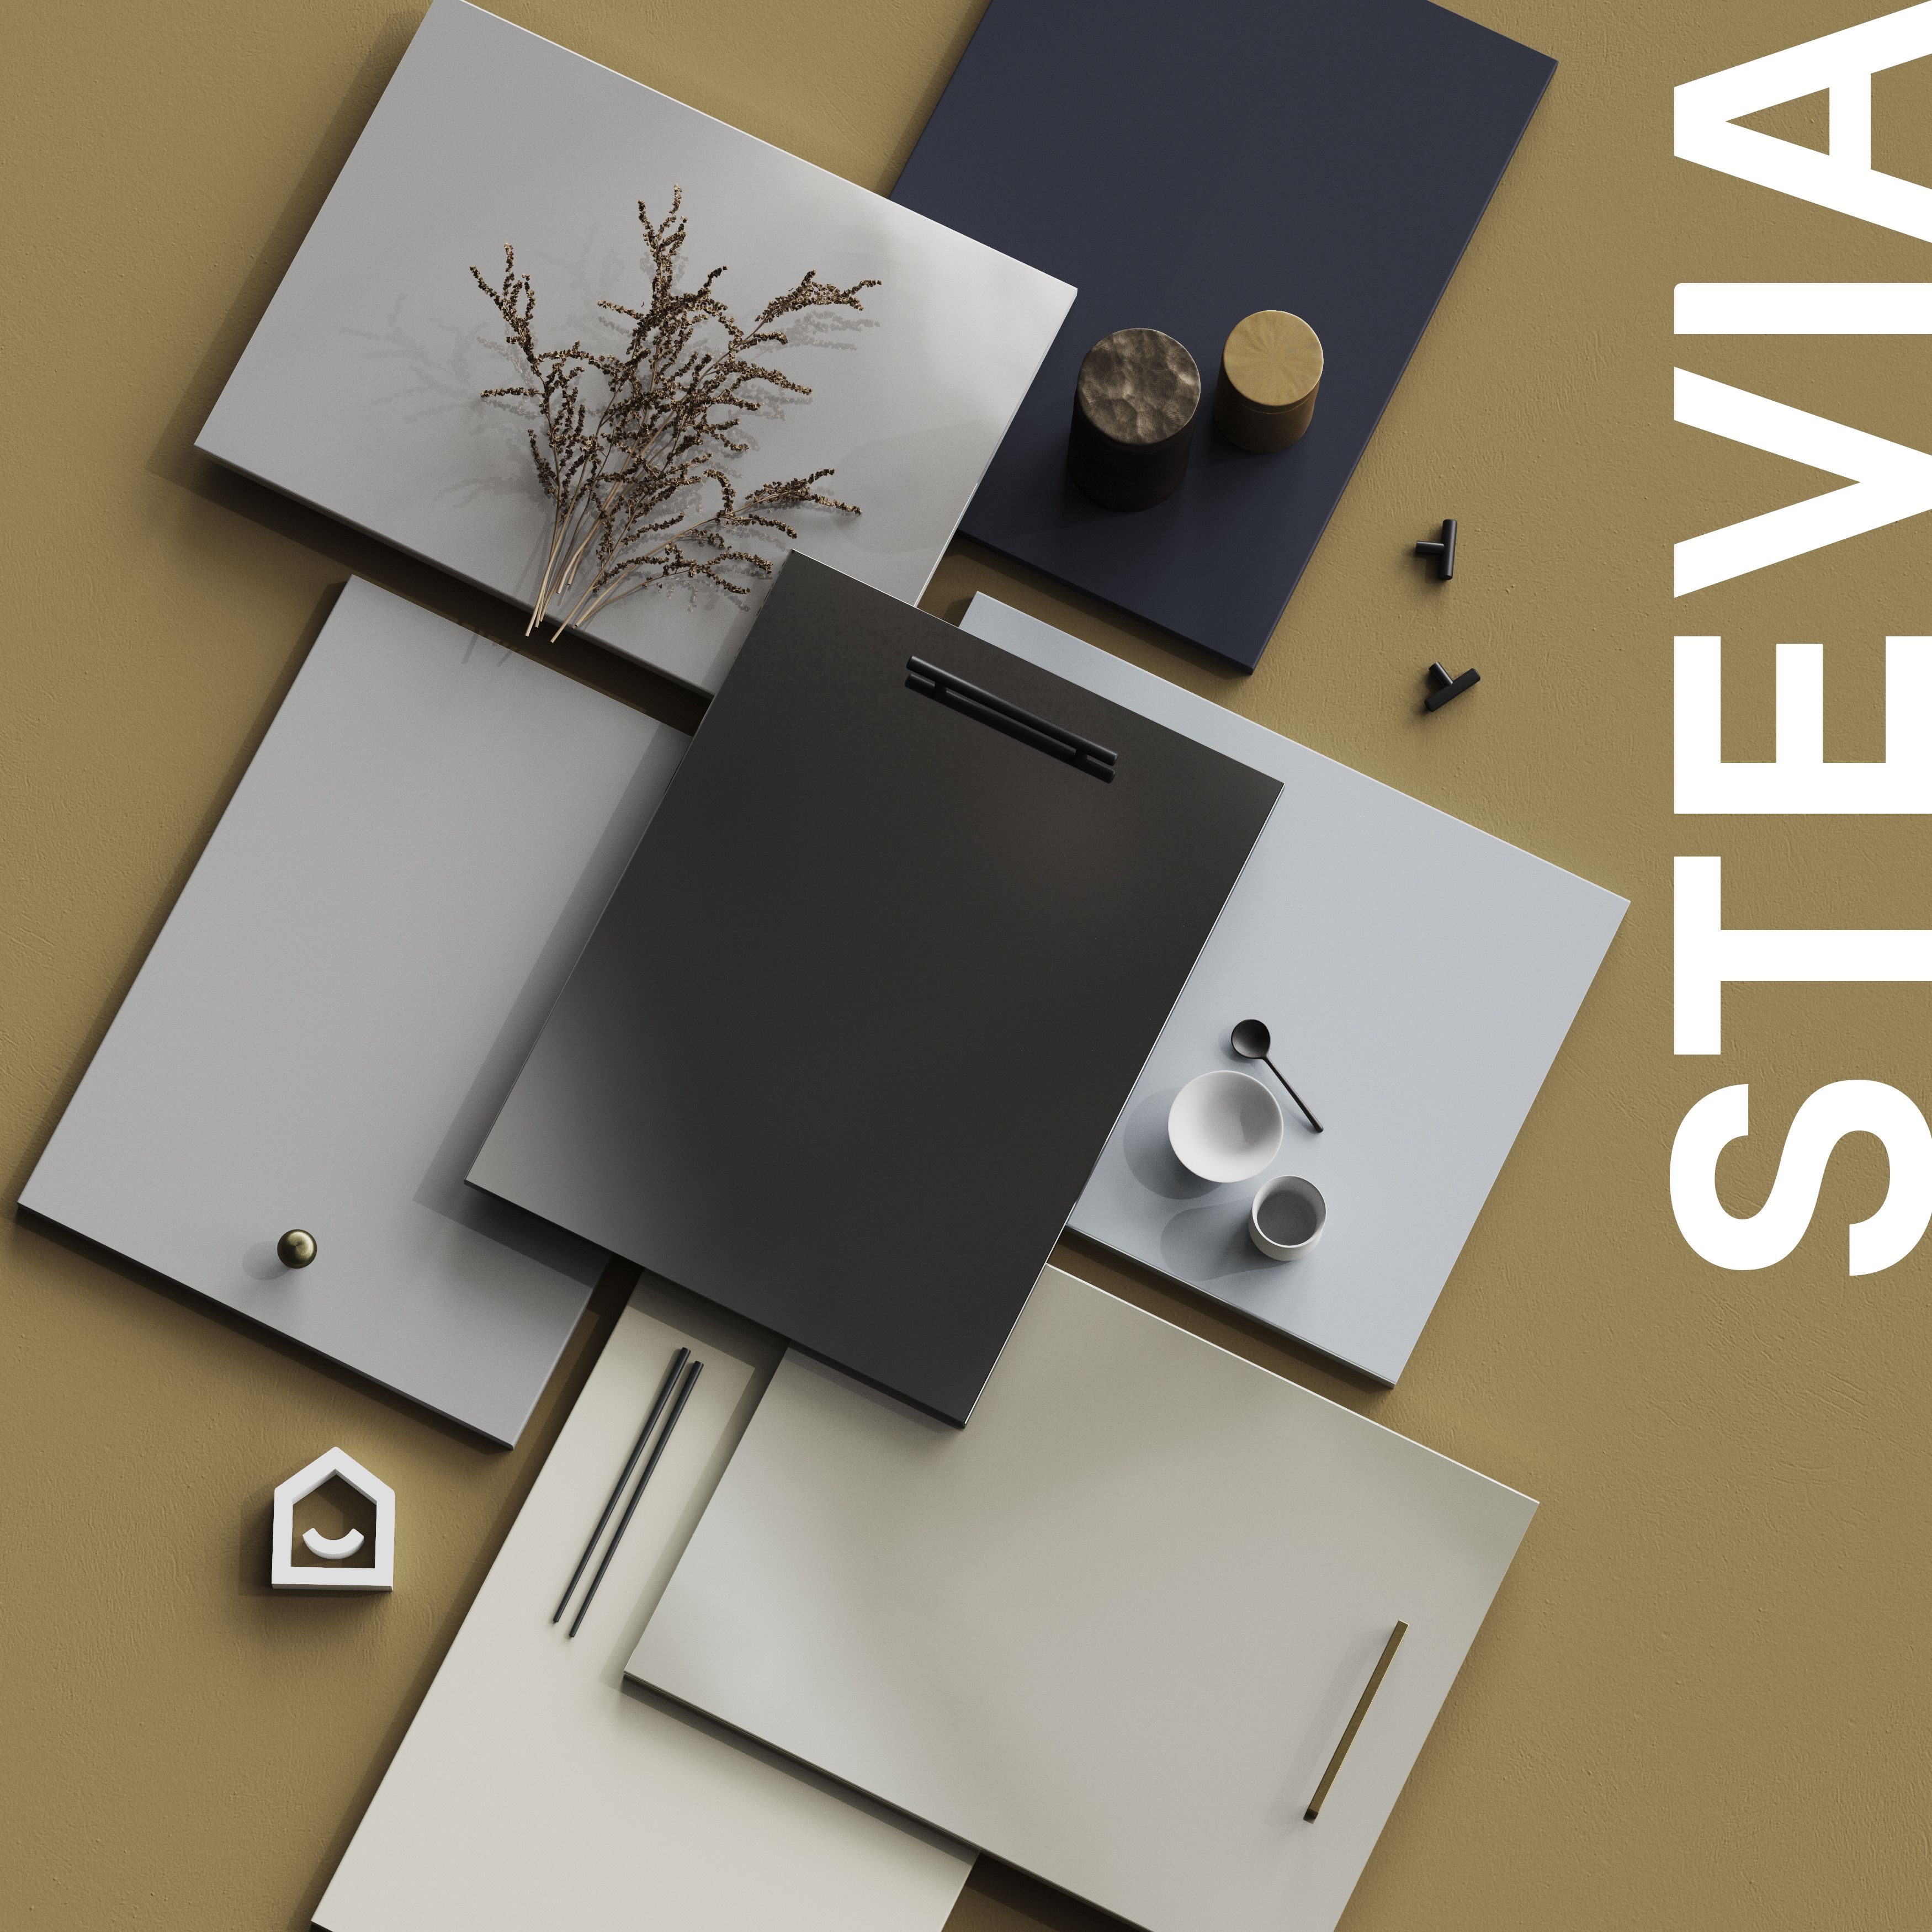 GoodHome Stevia Gloss grey slab 50:50 Larder Cabinet door (W)600mm (H)1001mm (T)18mm